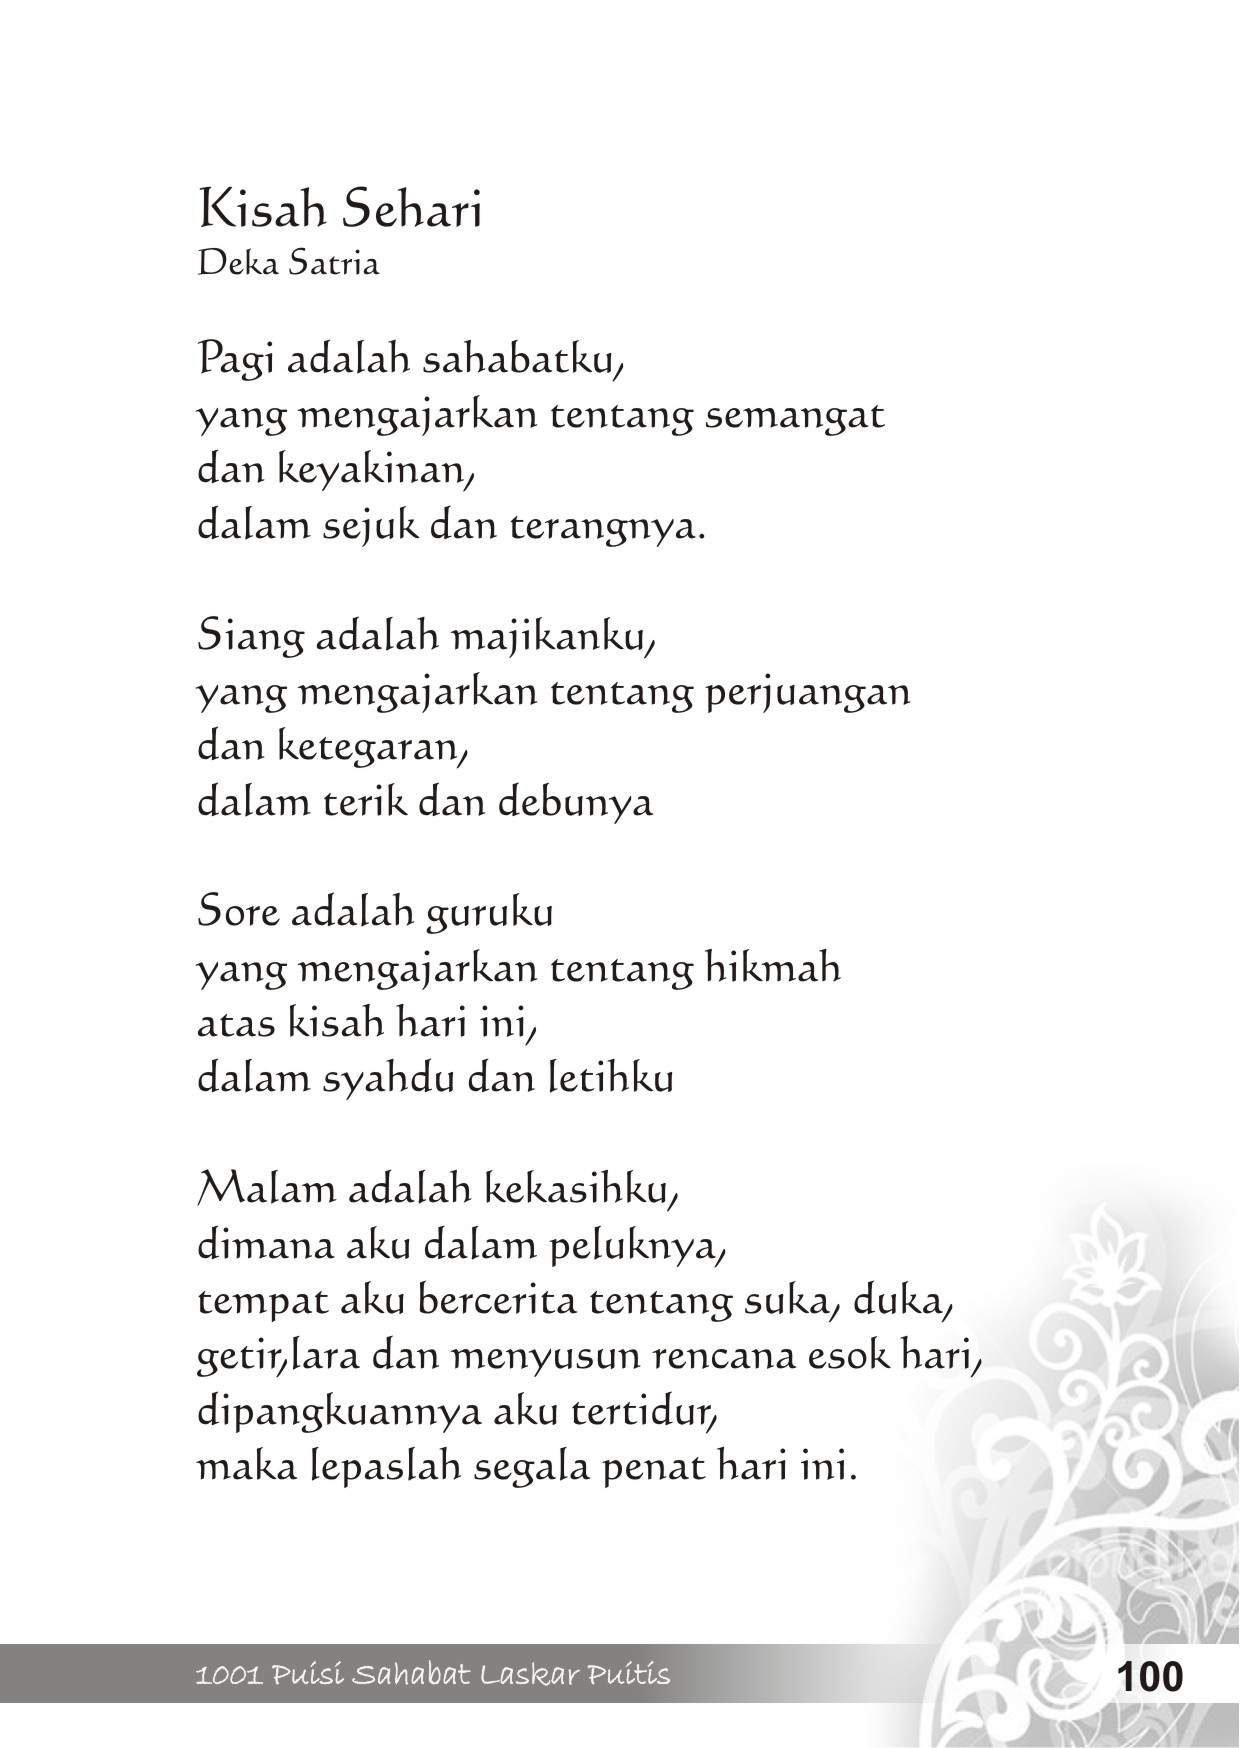 Content Buku 1001 Puisi  Sahabat Laskar Puitis   Jasa 